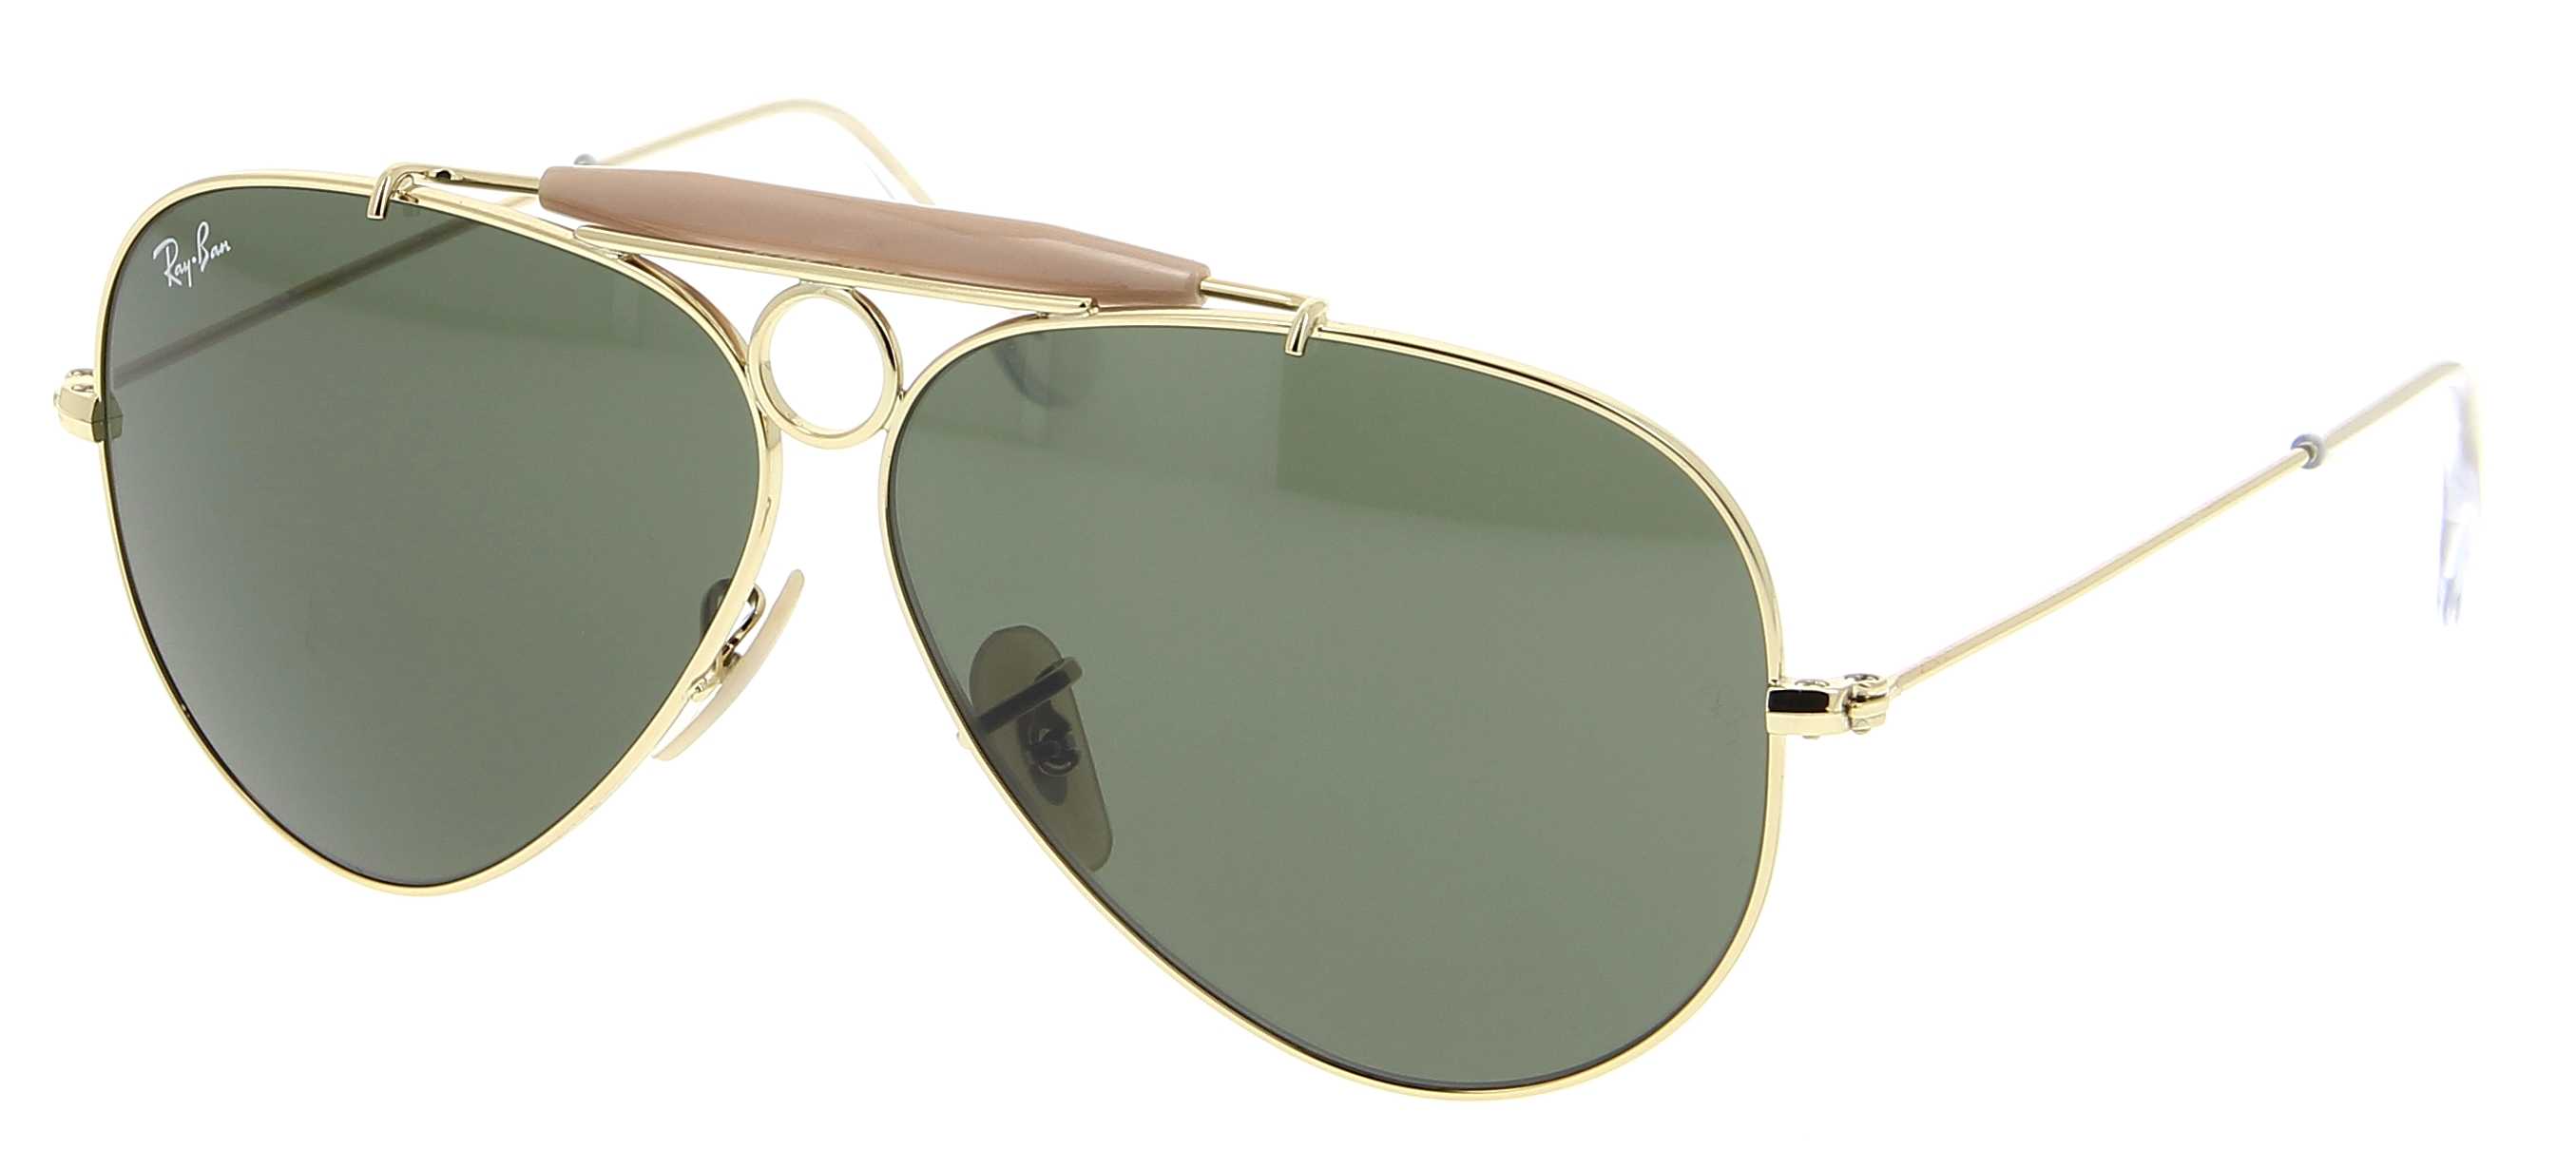 Sunglasses RAY-BAN RB 3138 001 Shooter 58/9 Unisex doré Aviator frames Full  Frame Glasses Vintage 58mmx9mm 125$CA